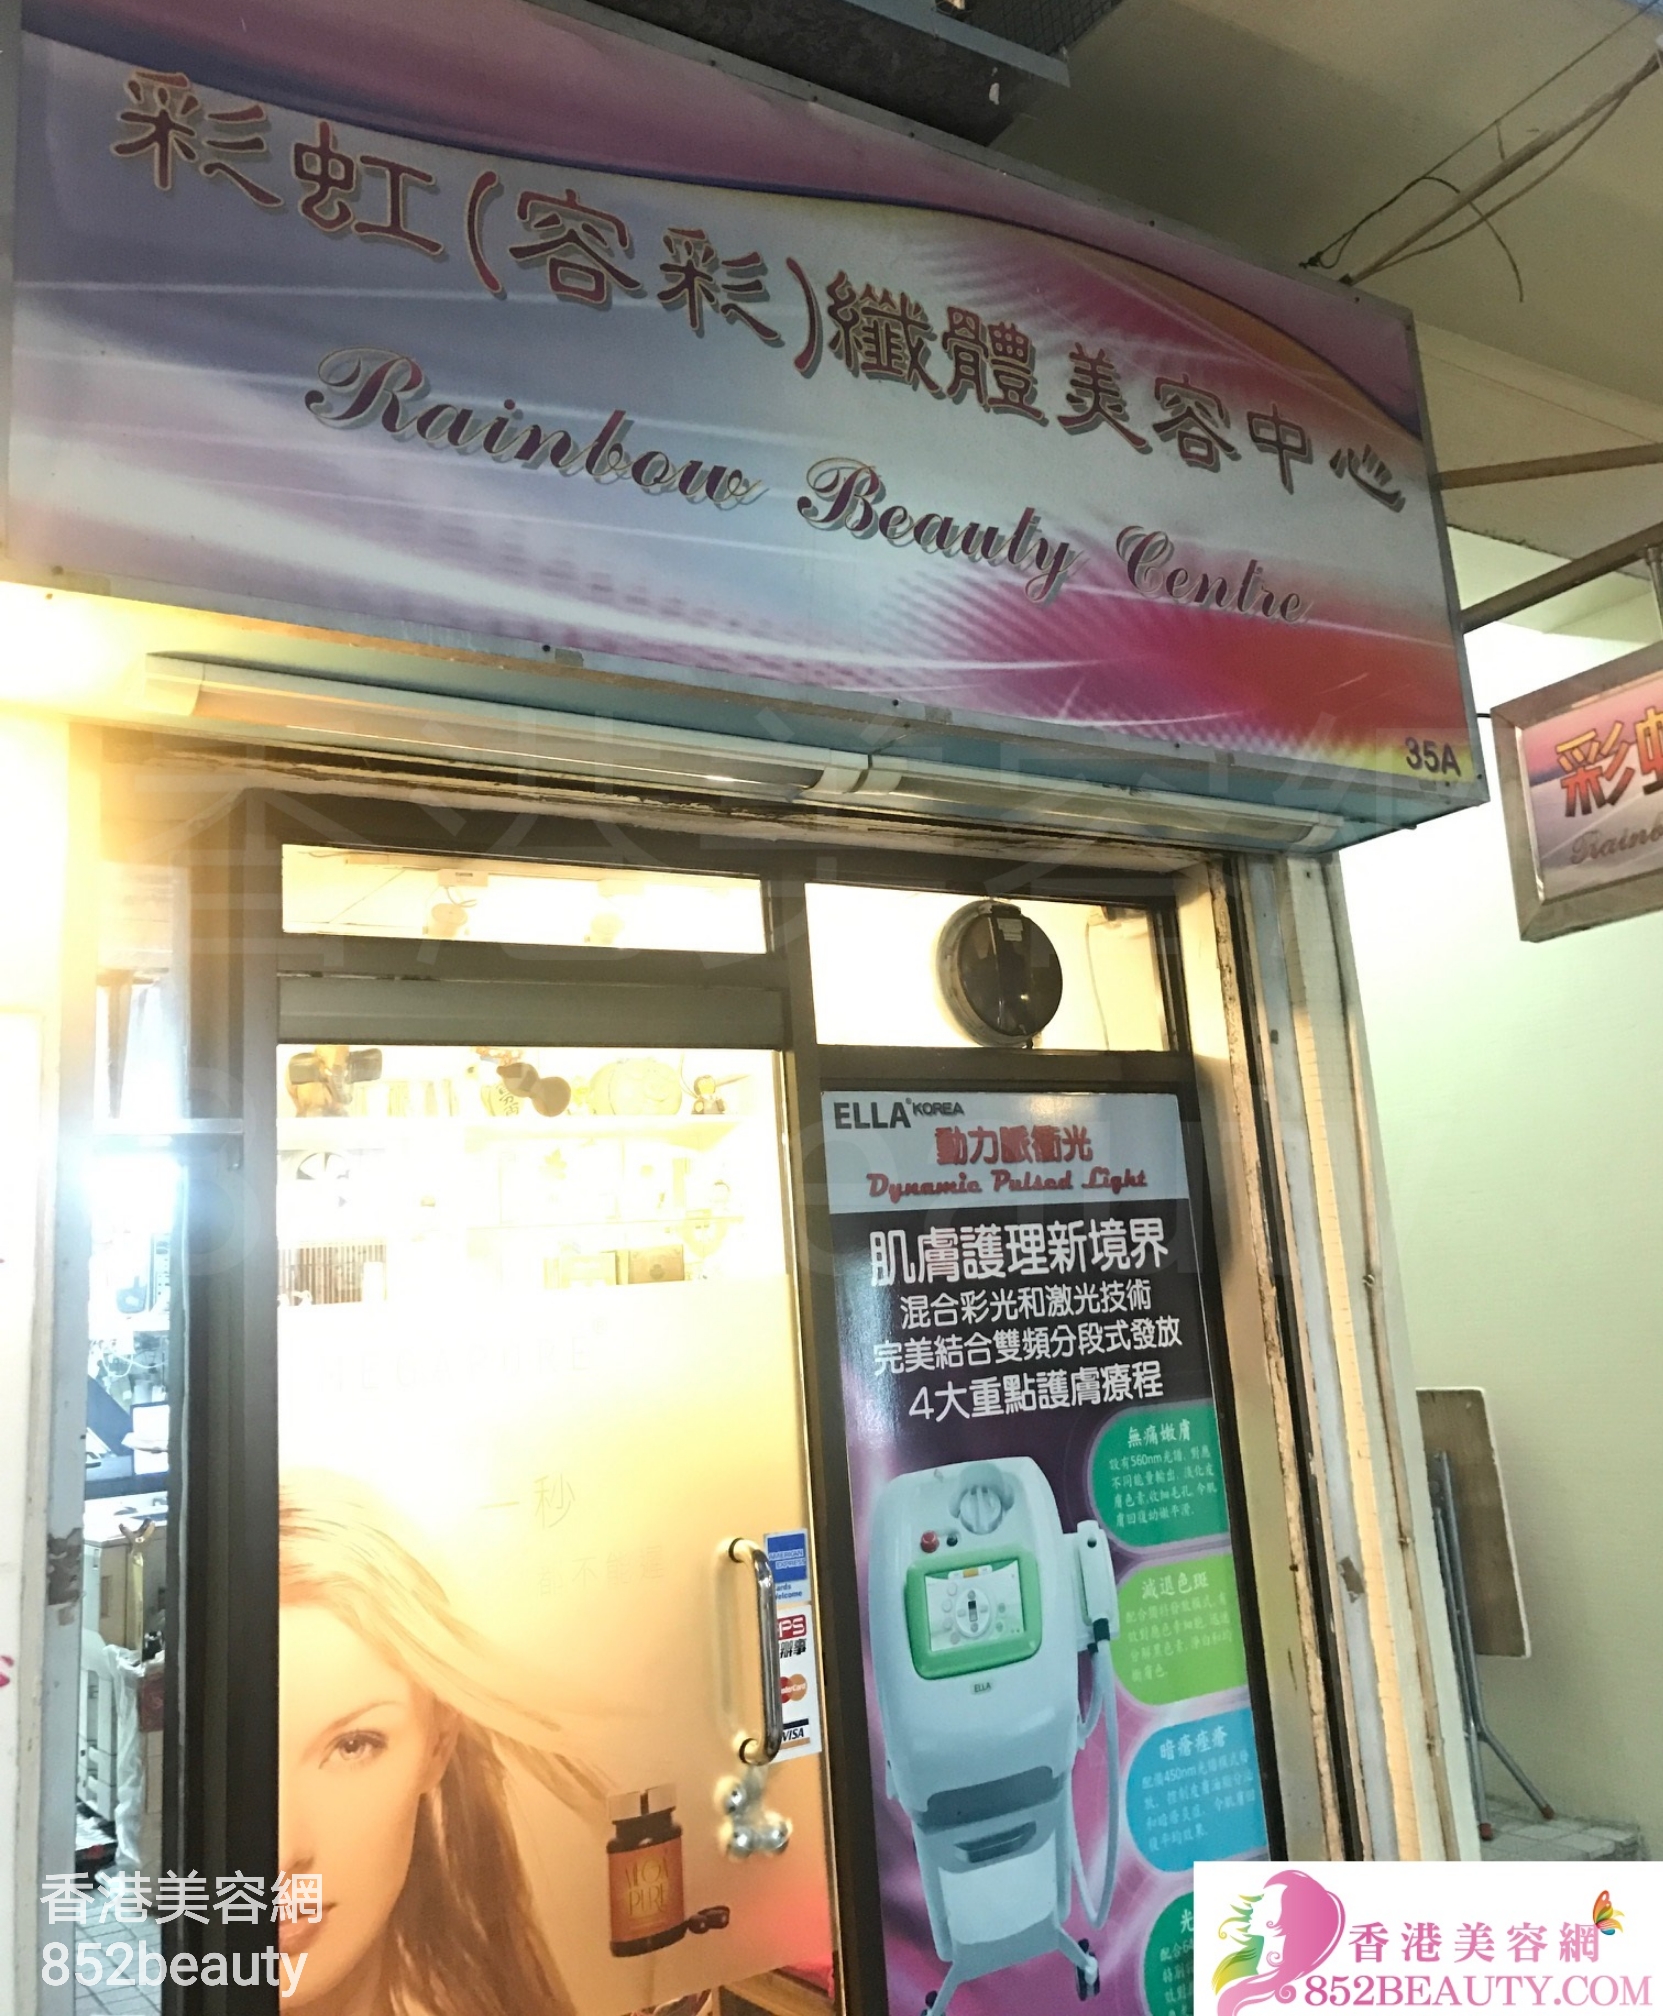 香港美容網 Hong Kong Beauty Salon 美容院 / 美容師: 彩虹(容彩)纖體美容中心 Rainbow Beauty Centre